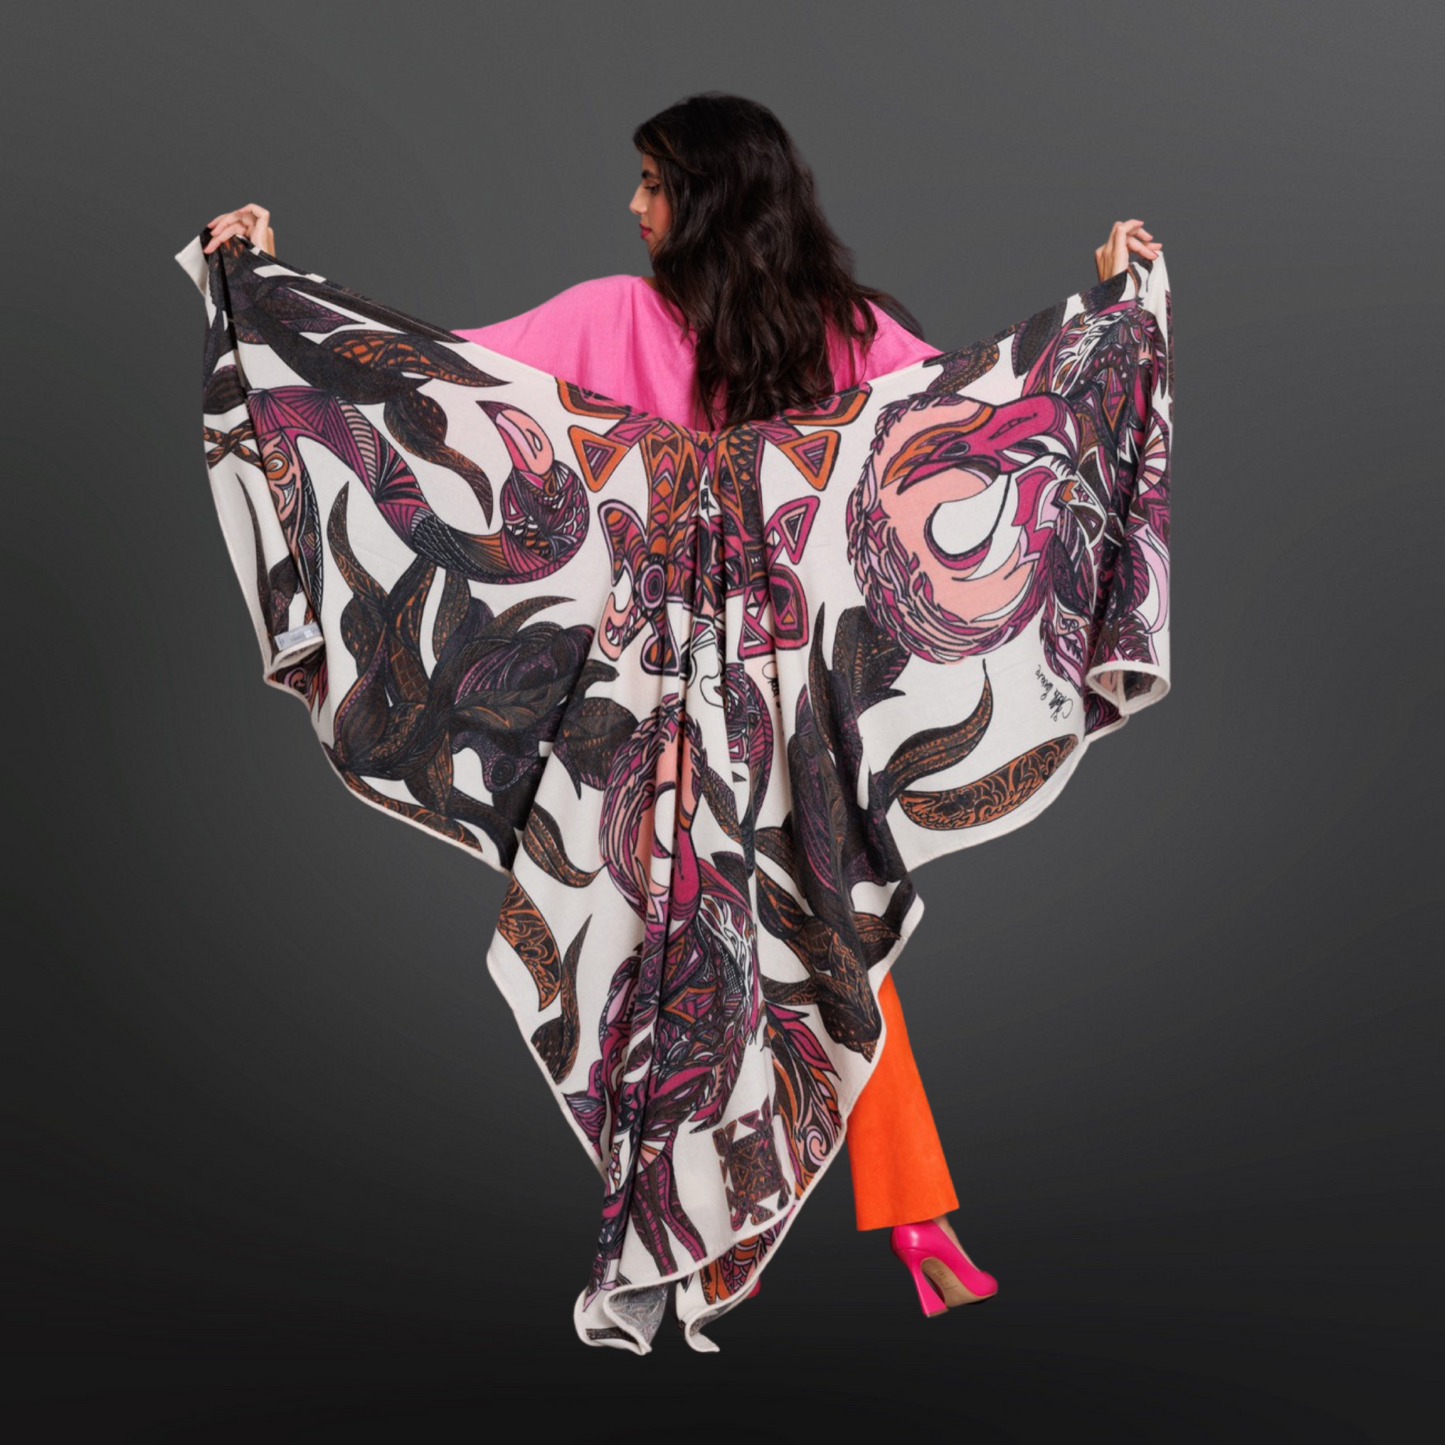 Cashmere stole - cape “FLAMINGO GARDEN” - pink &amp; mauve on white - 5 PIECES LIMITED